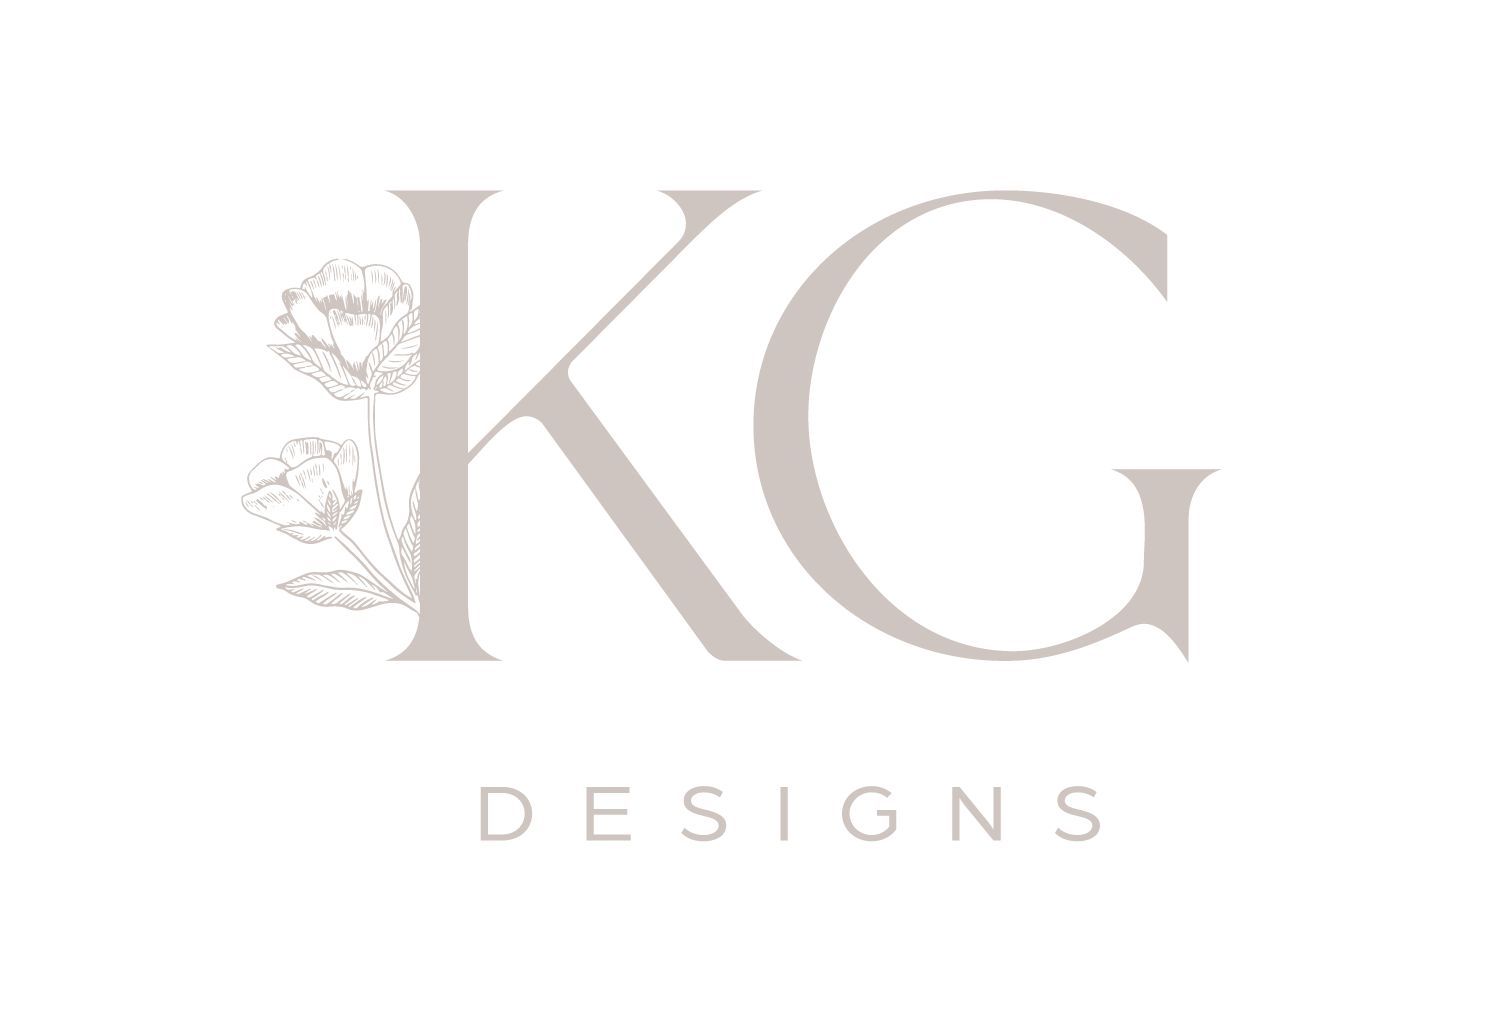 Katie Grace Designs | Full Service Interior Designer and E-Design Services